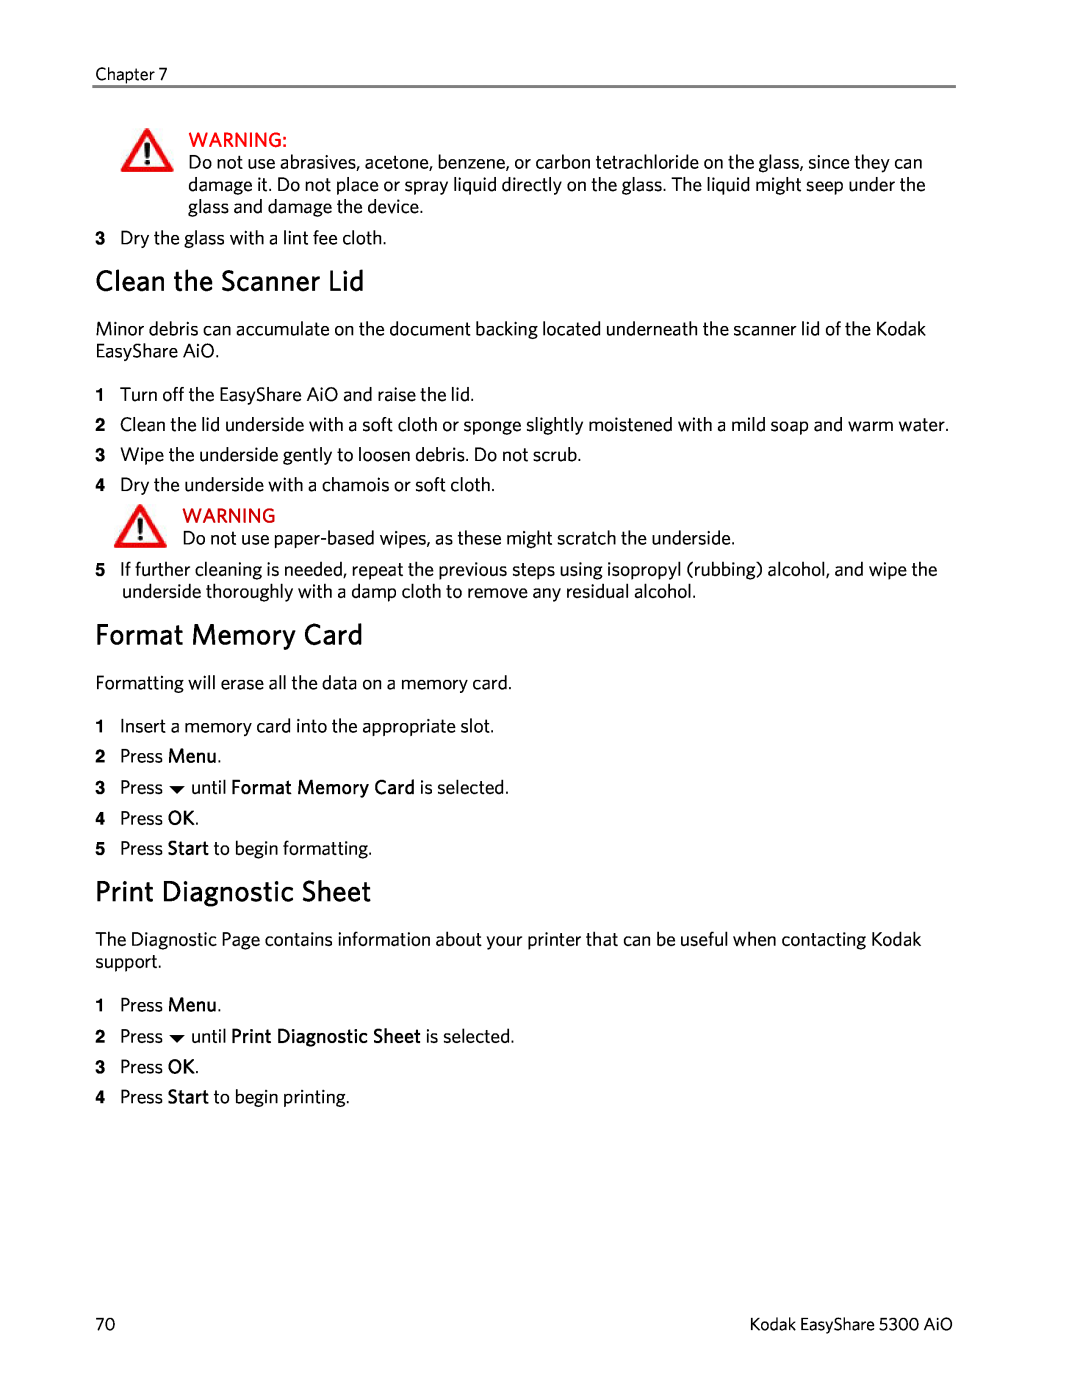 Kodak 5300 manual Clean the Scanner Lid, Format Memory Card, Print Diagnostic Sheet 